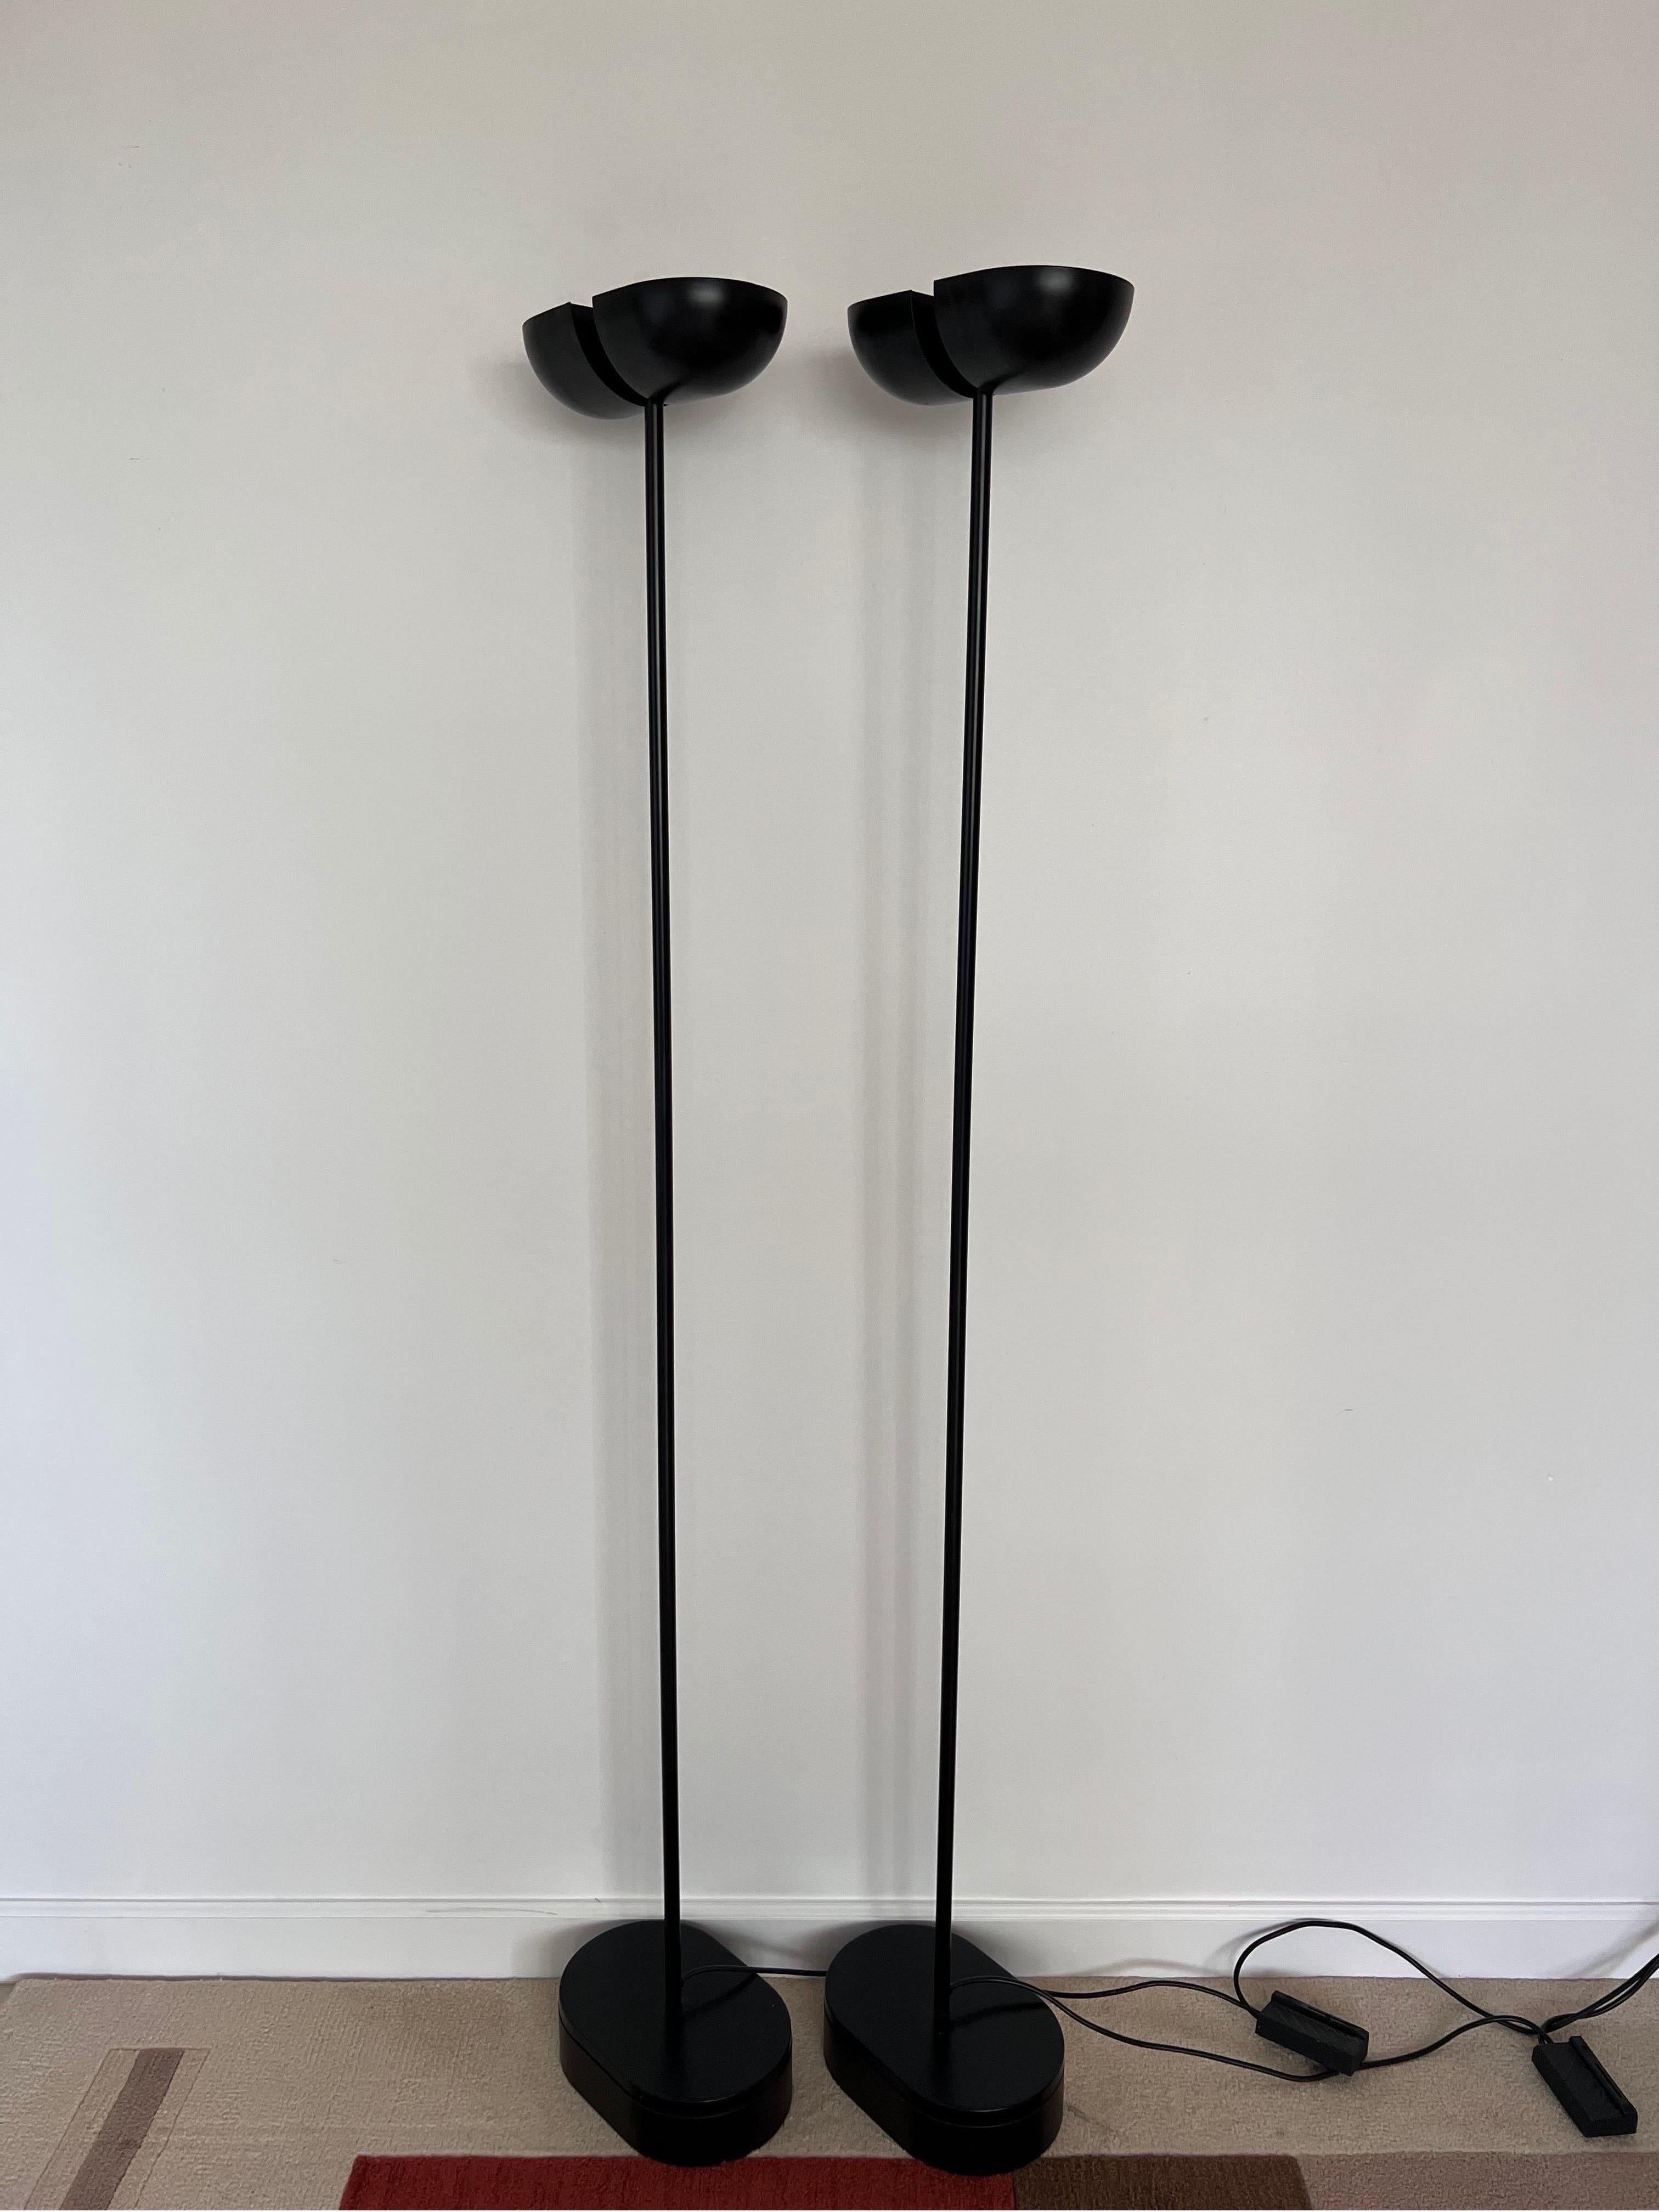 Postmoderne schwarze Torchiere-Stehlampen mit verstellbaren Köpfen, 1980er Jahre, ein Paar (Unbekannt)